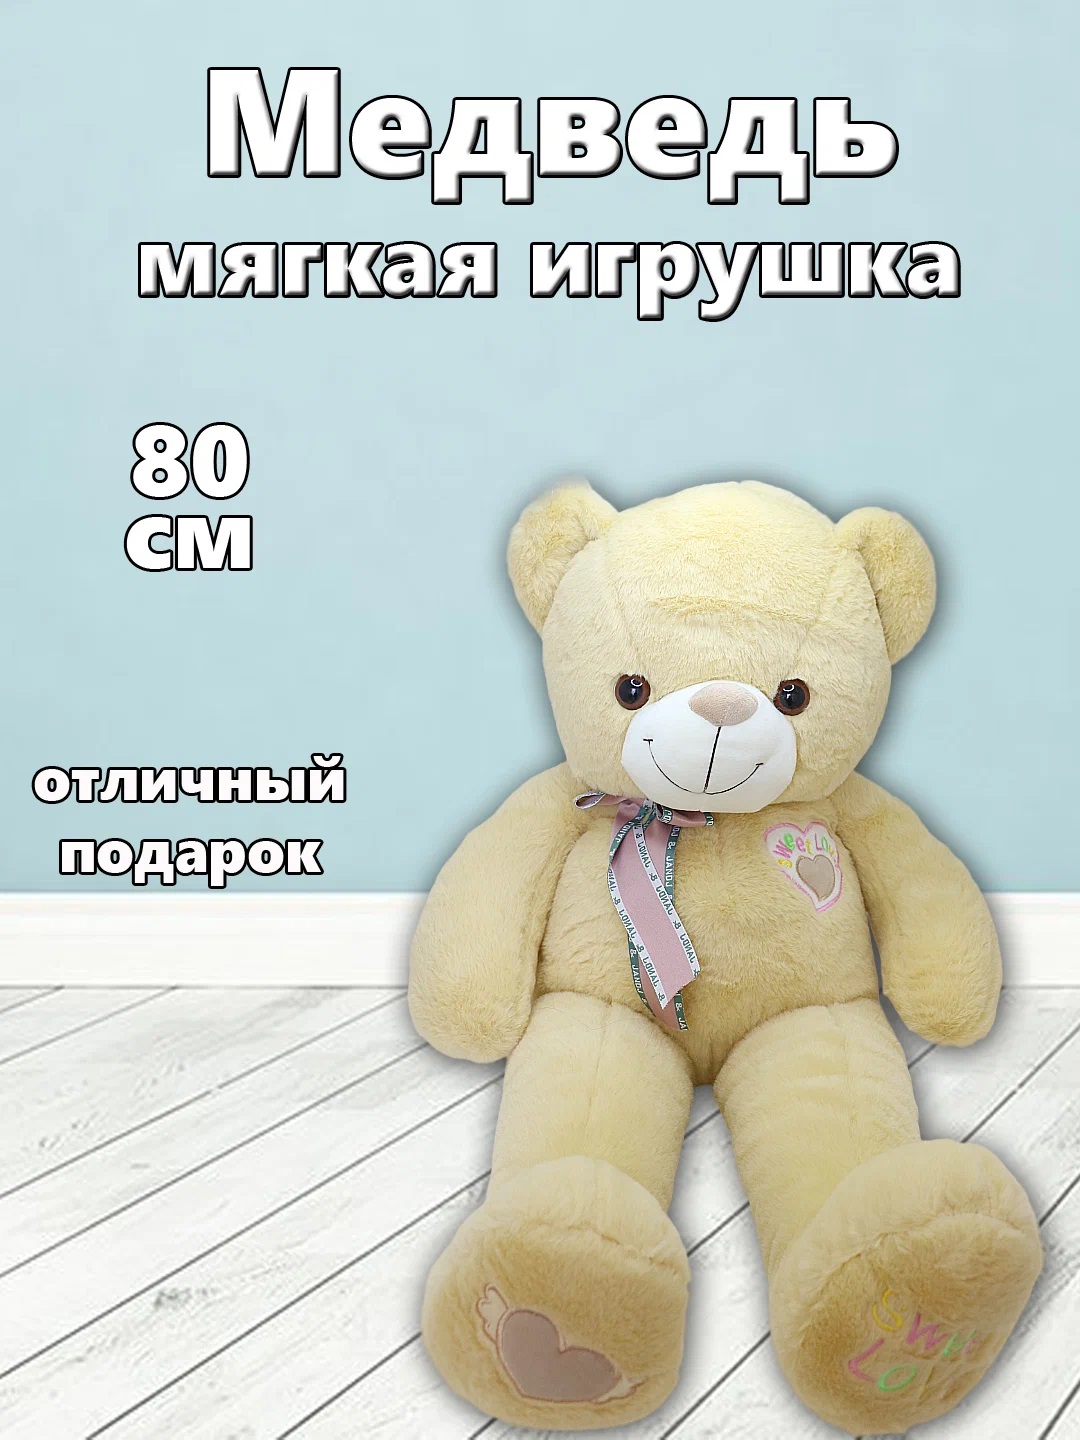 Мягкая игрушка TM S+S Медведь 80см коричневый мягкая игрушка медведь бен коричневый 50 см